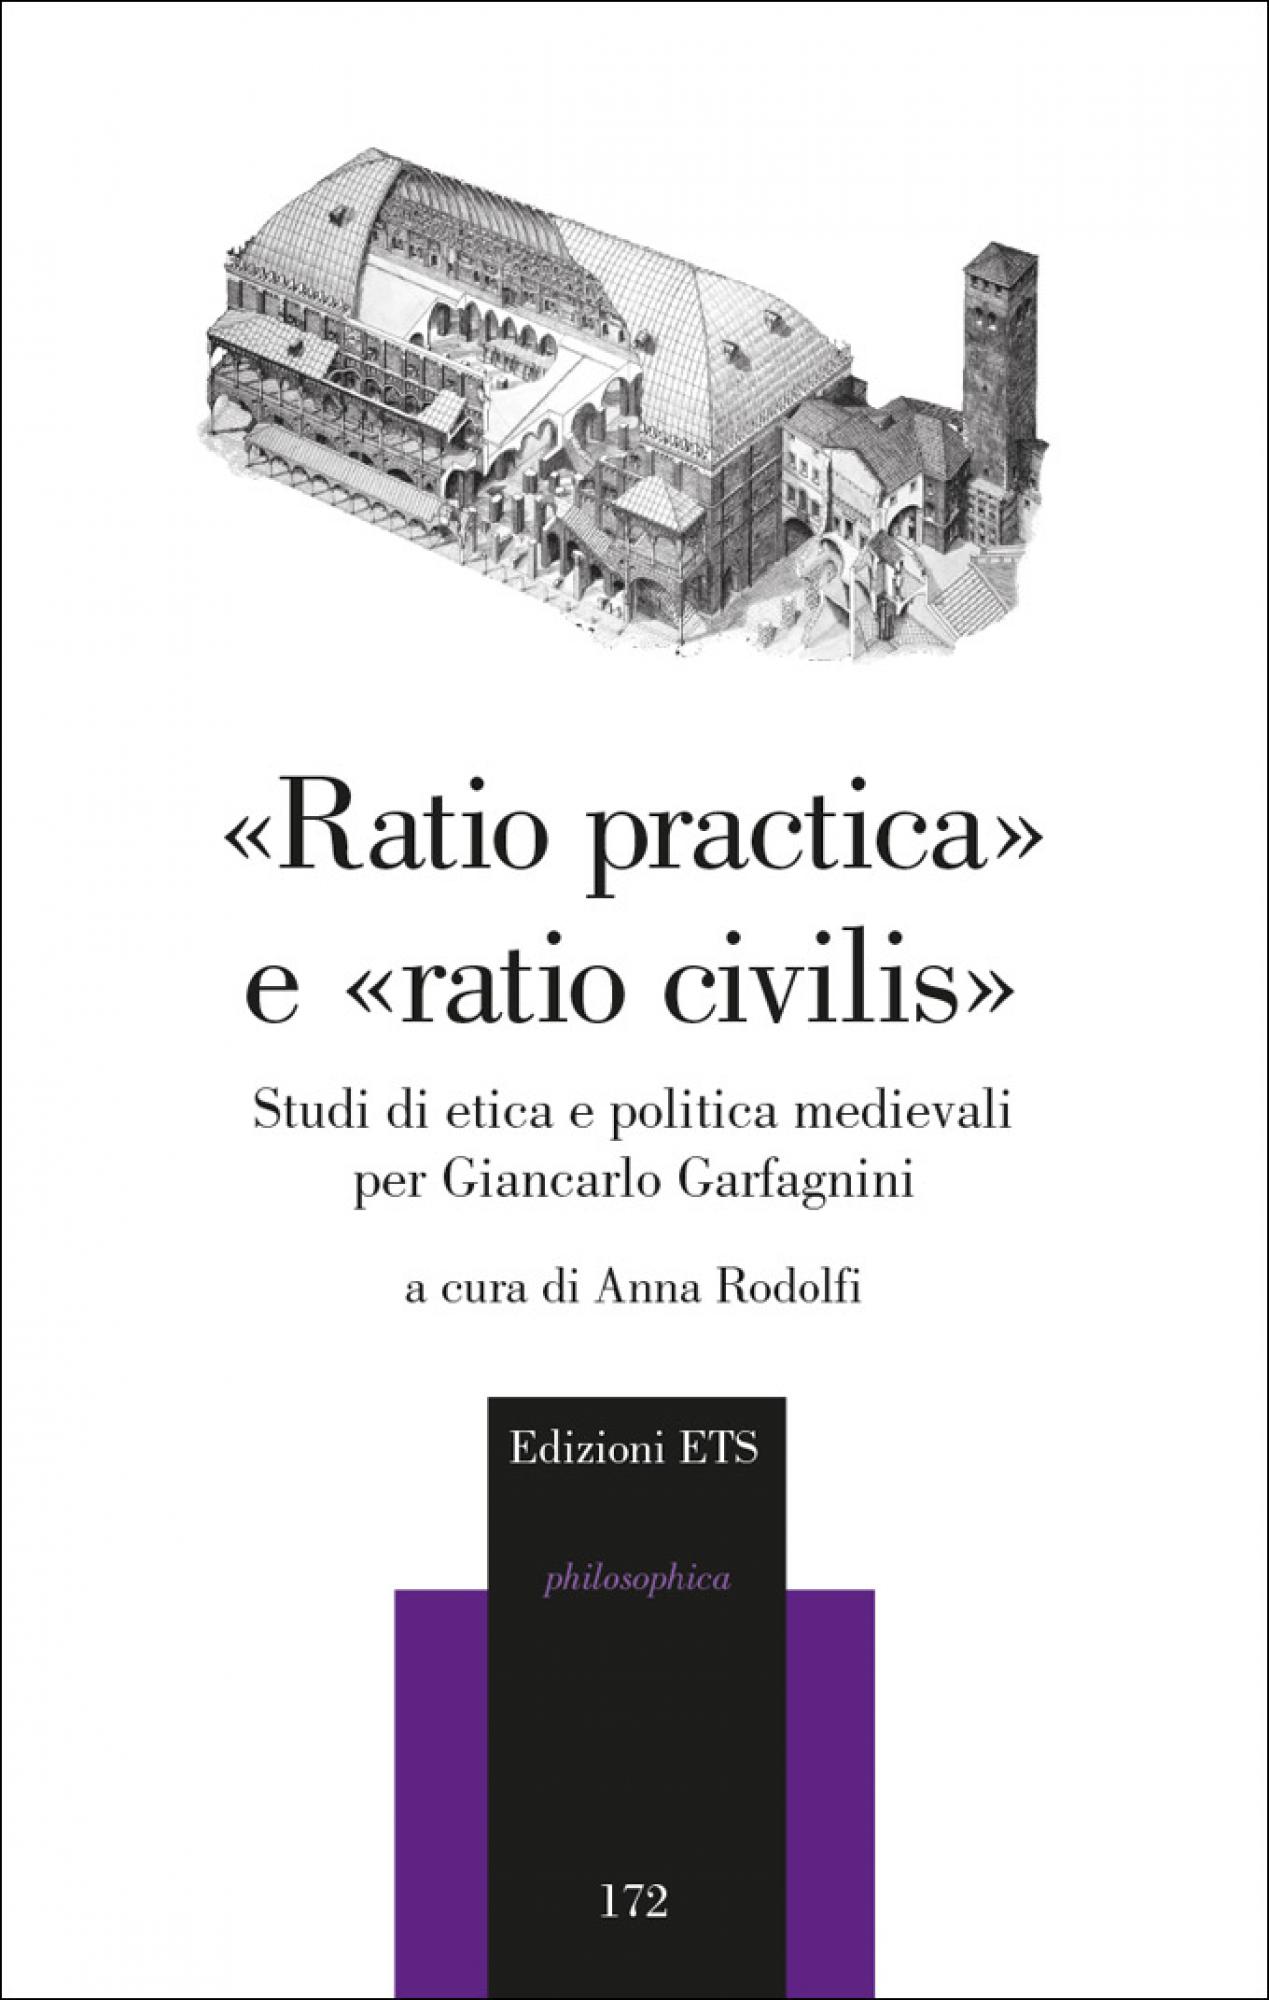 «Ratio practica» e «ratio civilis».Studi di etica e politica medievali per Giancarlo Garfagnini